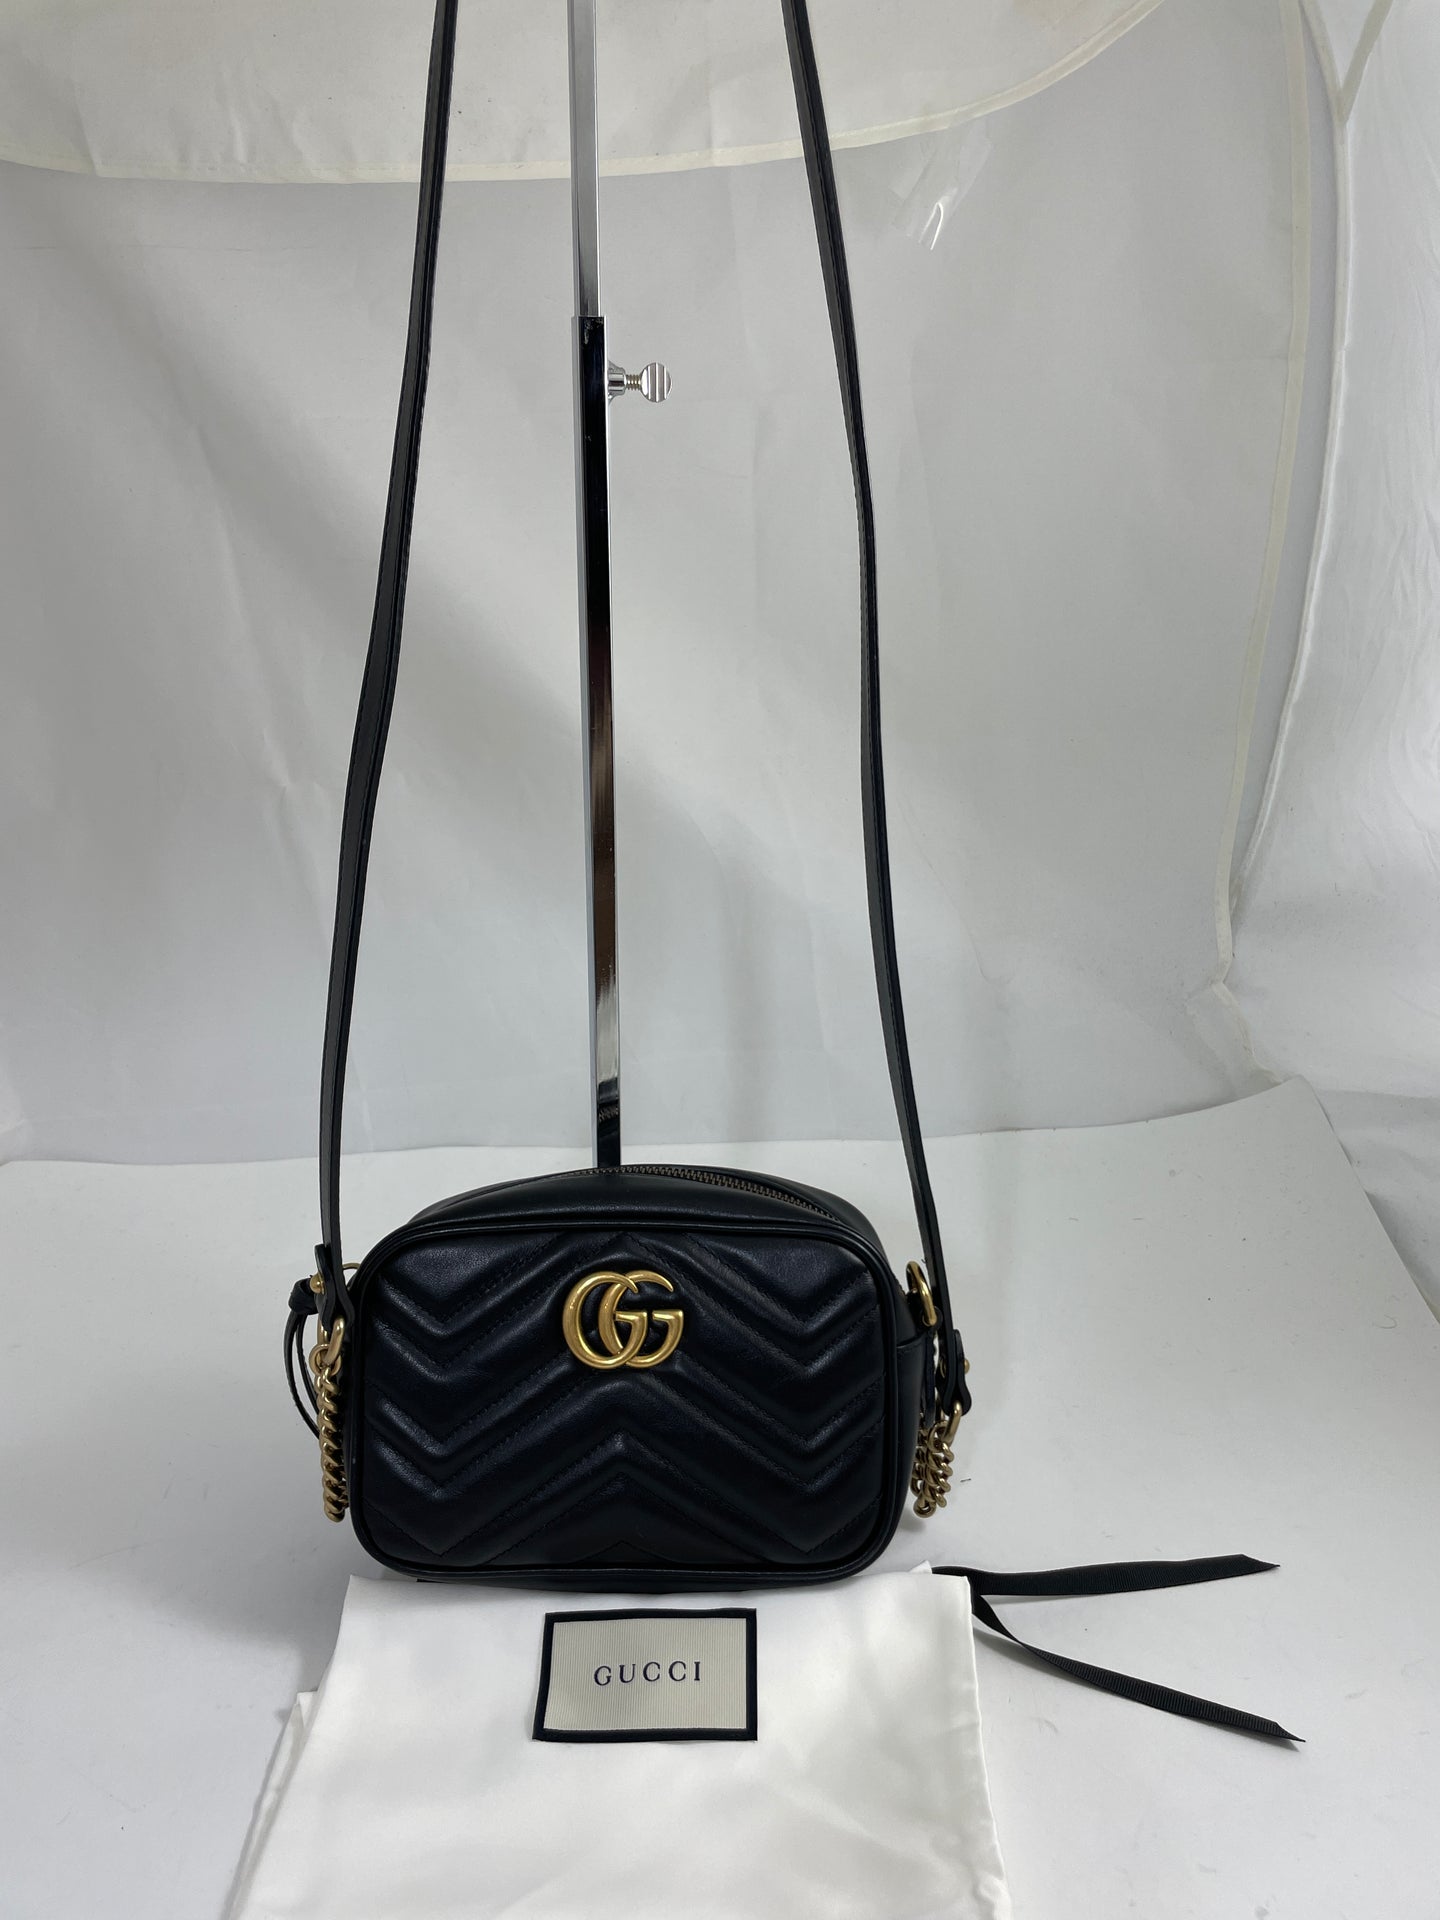 Gucci Marmont Small Black Camera bag